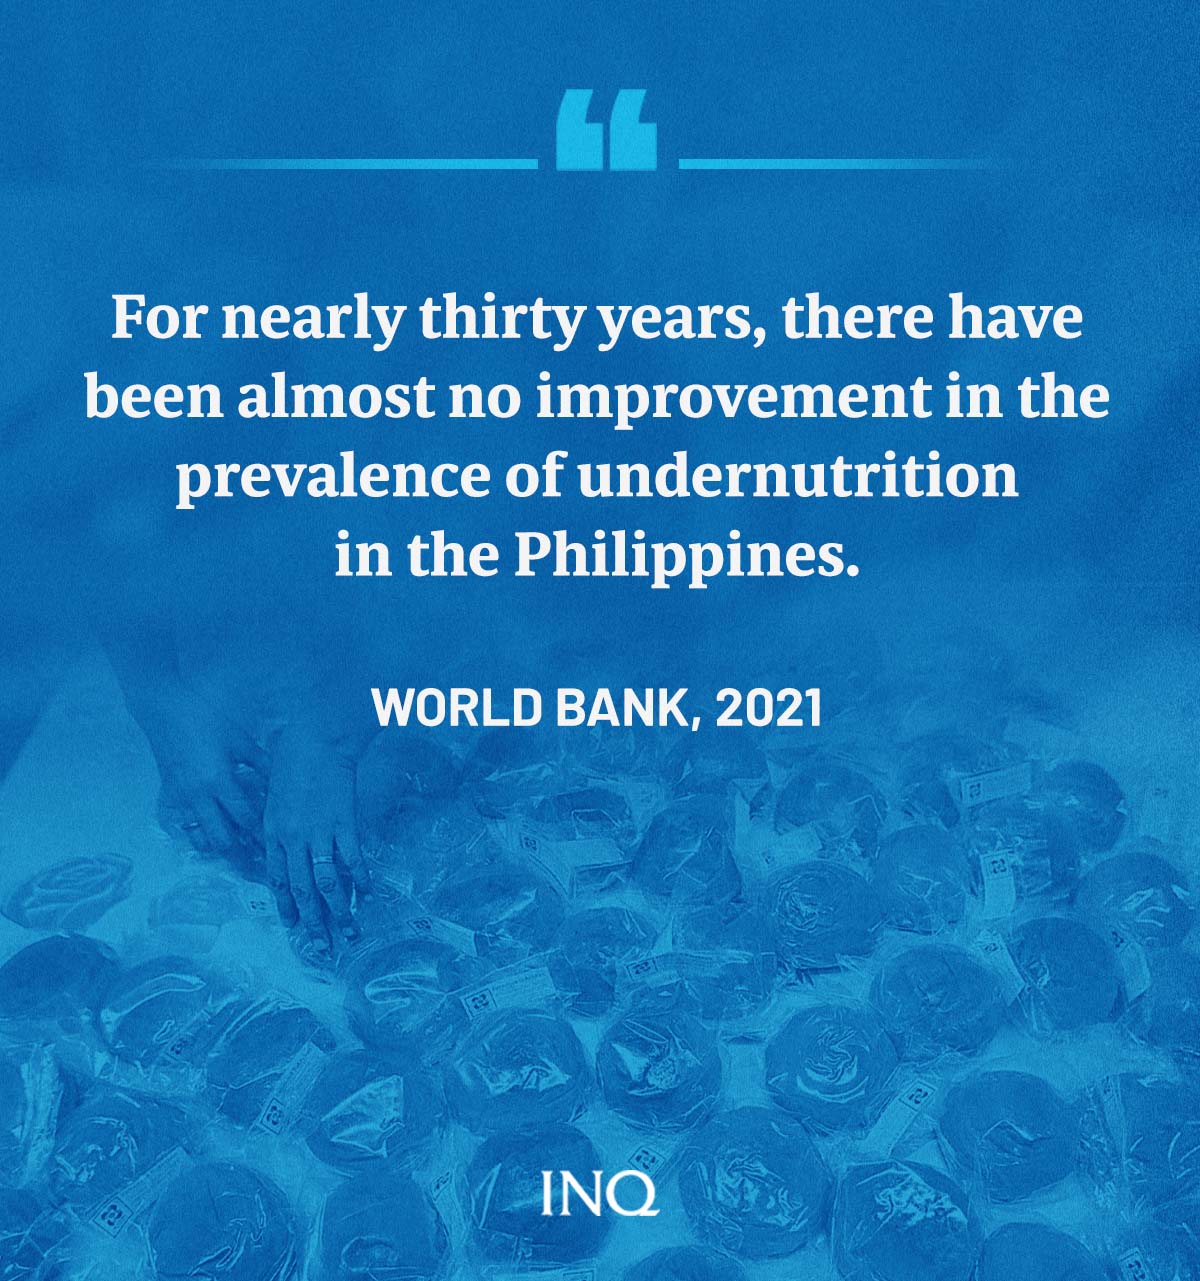 Undernutrition, malnutrition